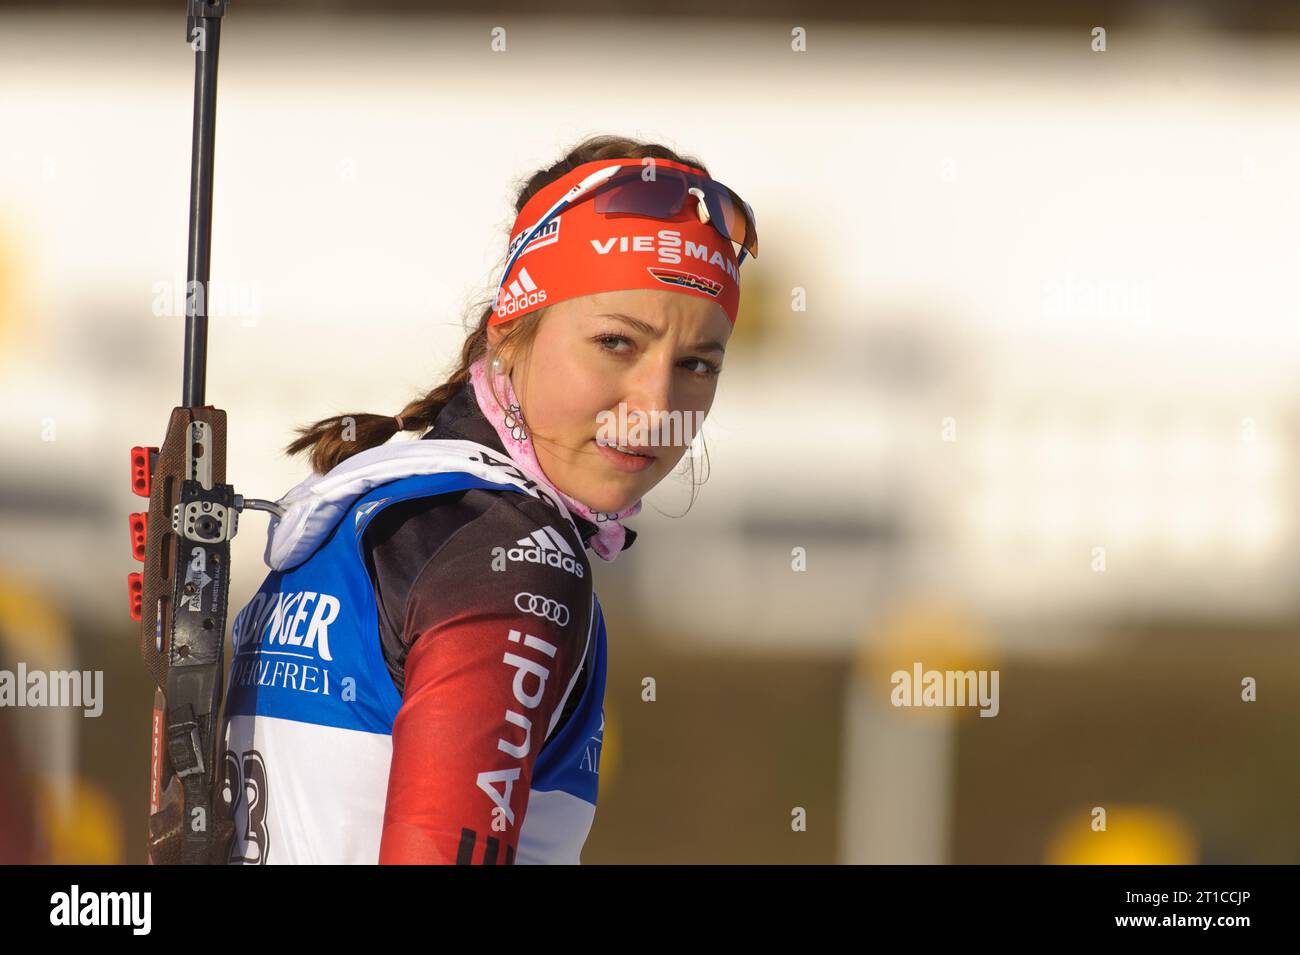 Luise Kummer Portriat Biathlon Welt Cup 10 KM Verfolgung der Frauen in Hochfilzen, Oesterreich am 14.12.2014 Stock Photo